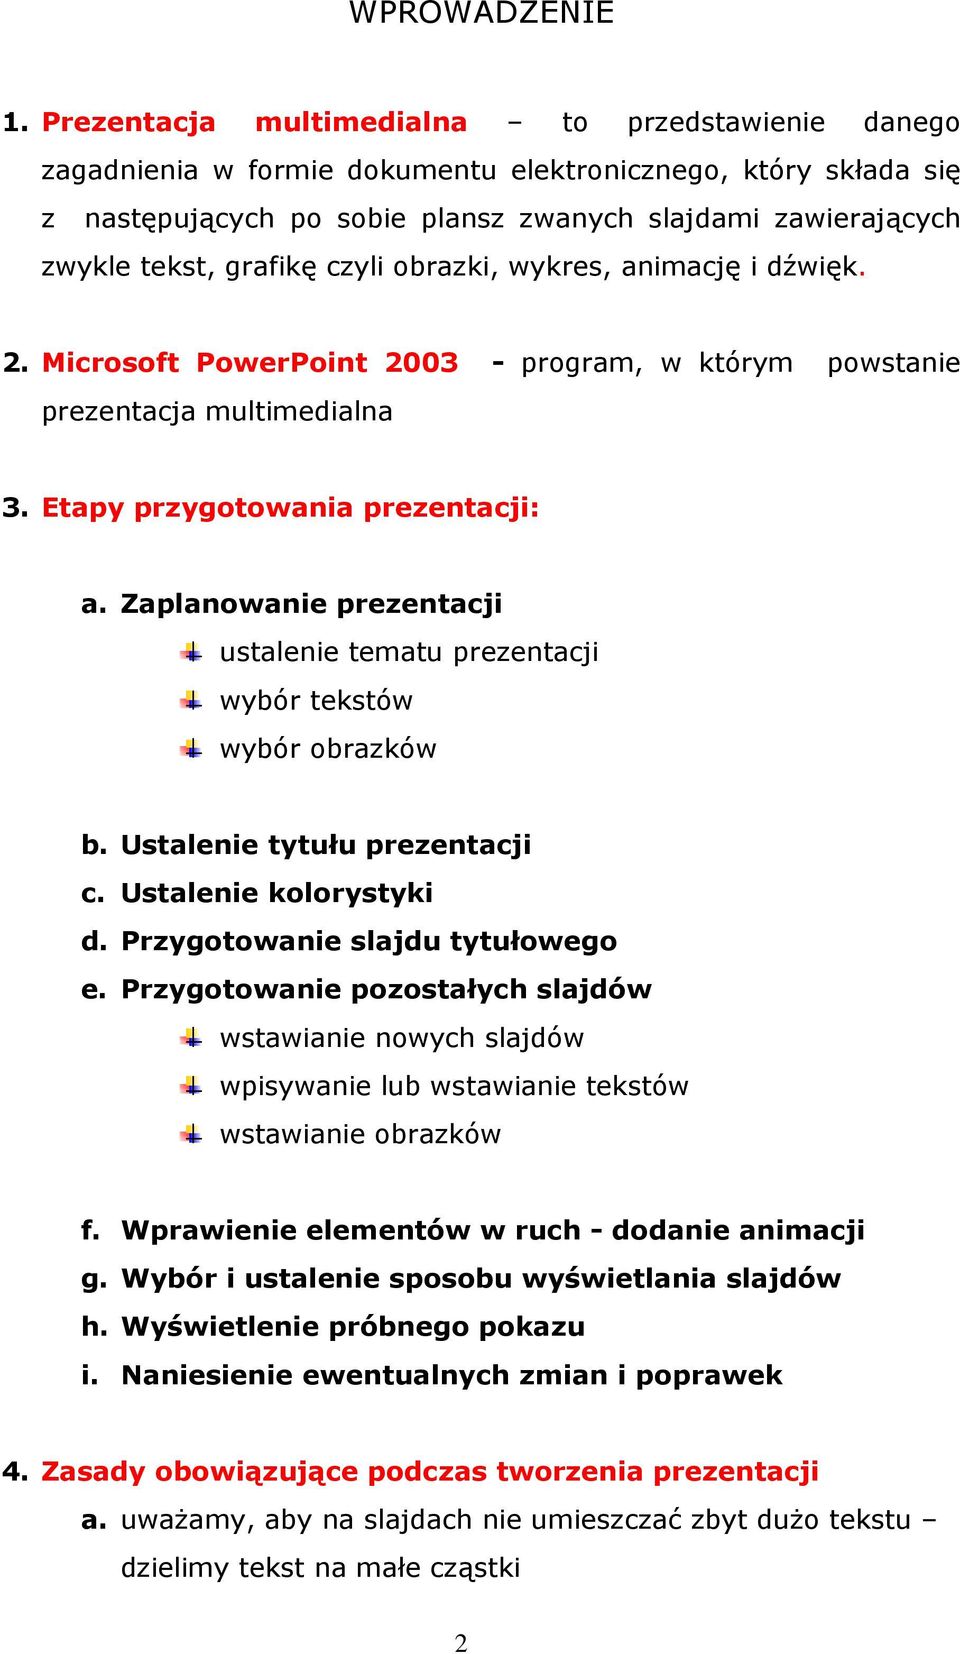 grafikę czyli obrazki, wykres, animację i dźwięk. 2. Microsoft PowerPoint 2003 - program, w którym powstanie prezentacja multimedialna 3. Etapy przygotowania prezentacji: a.